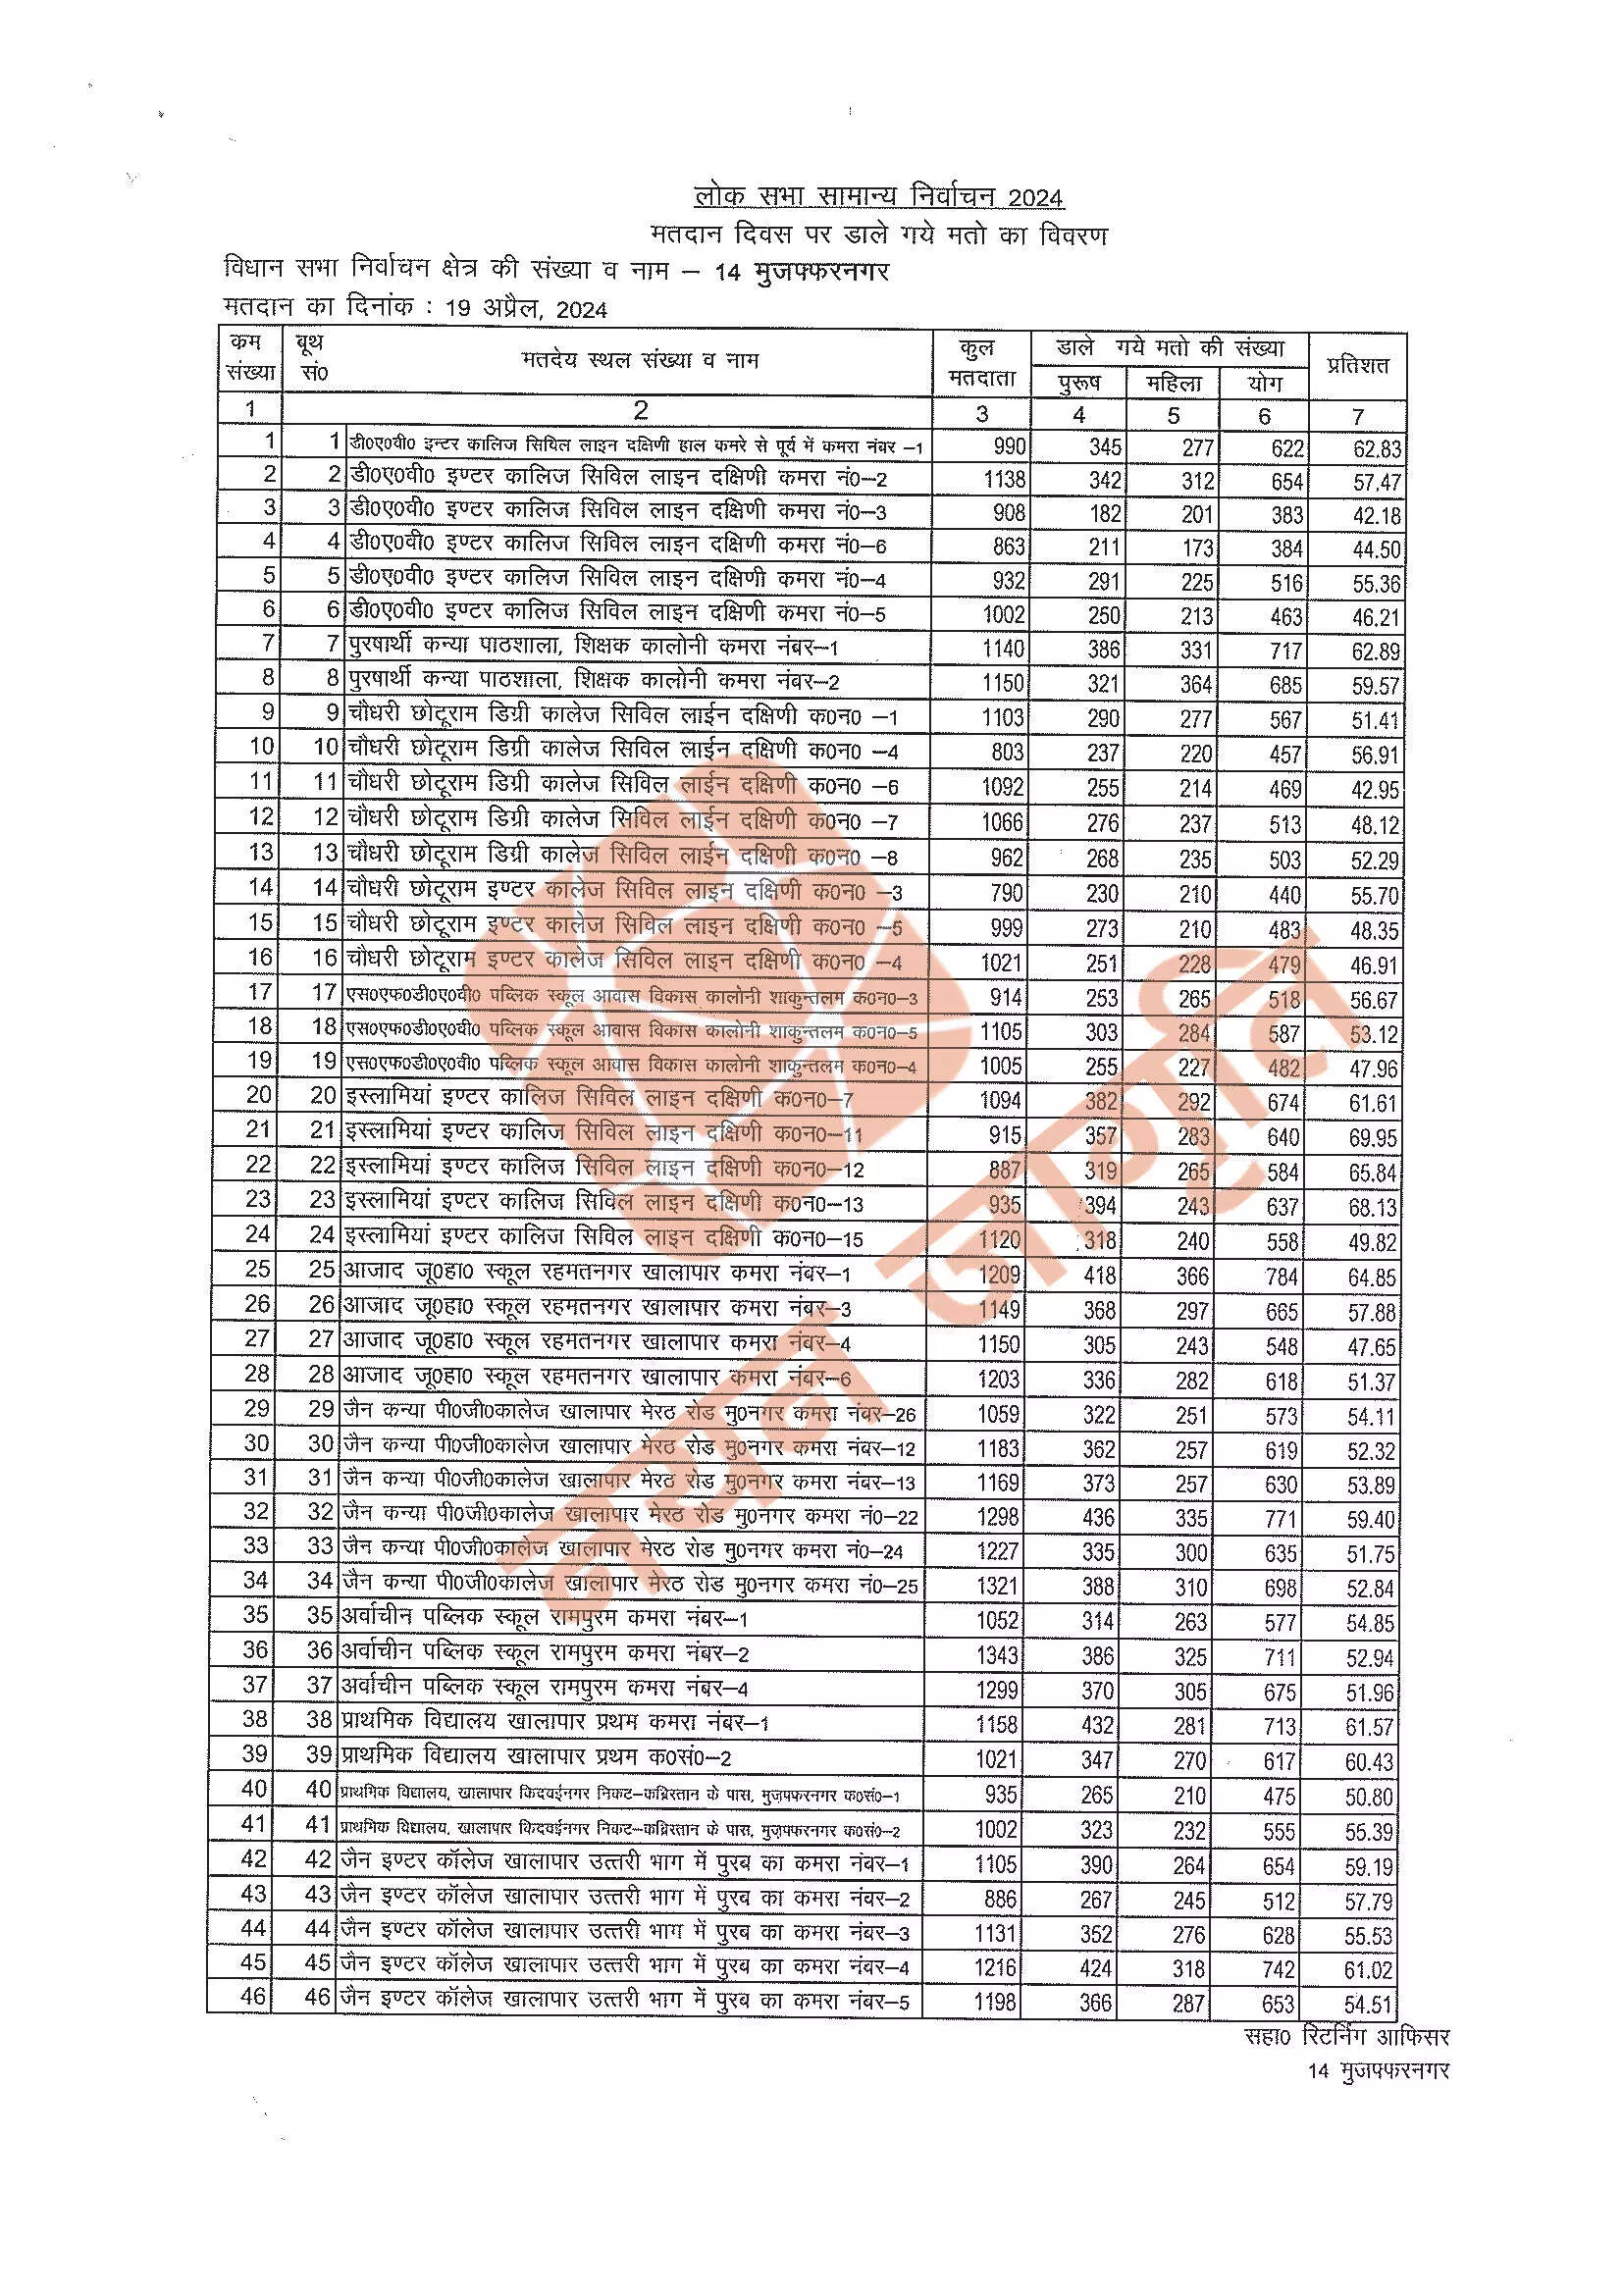 लोकसभा चुनाव-मुजफ्फरनगर विधानसभा में सबसे कम 39 फीसदी वोट